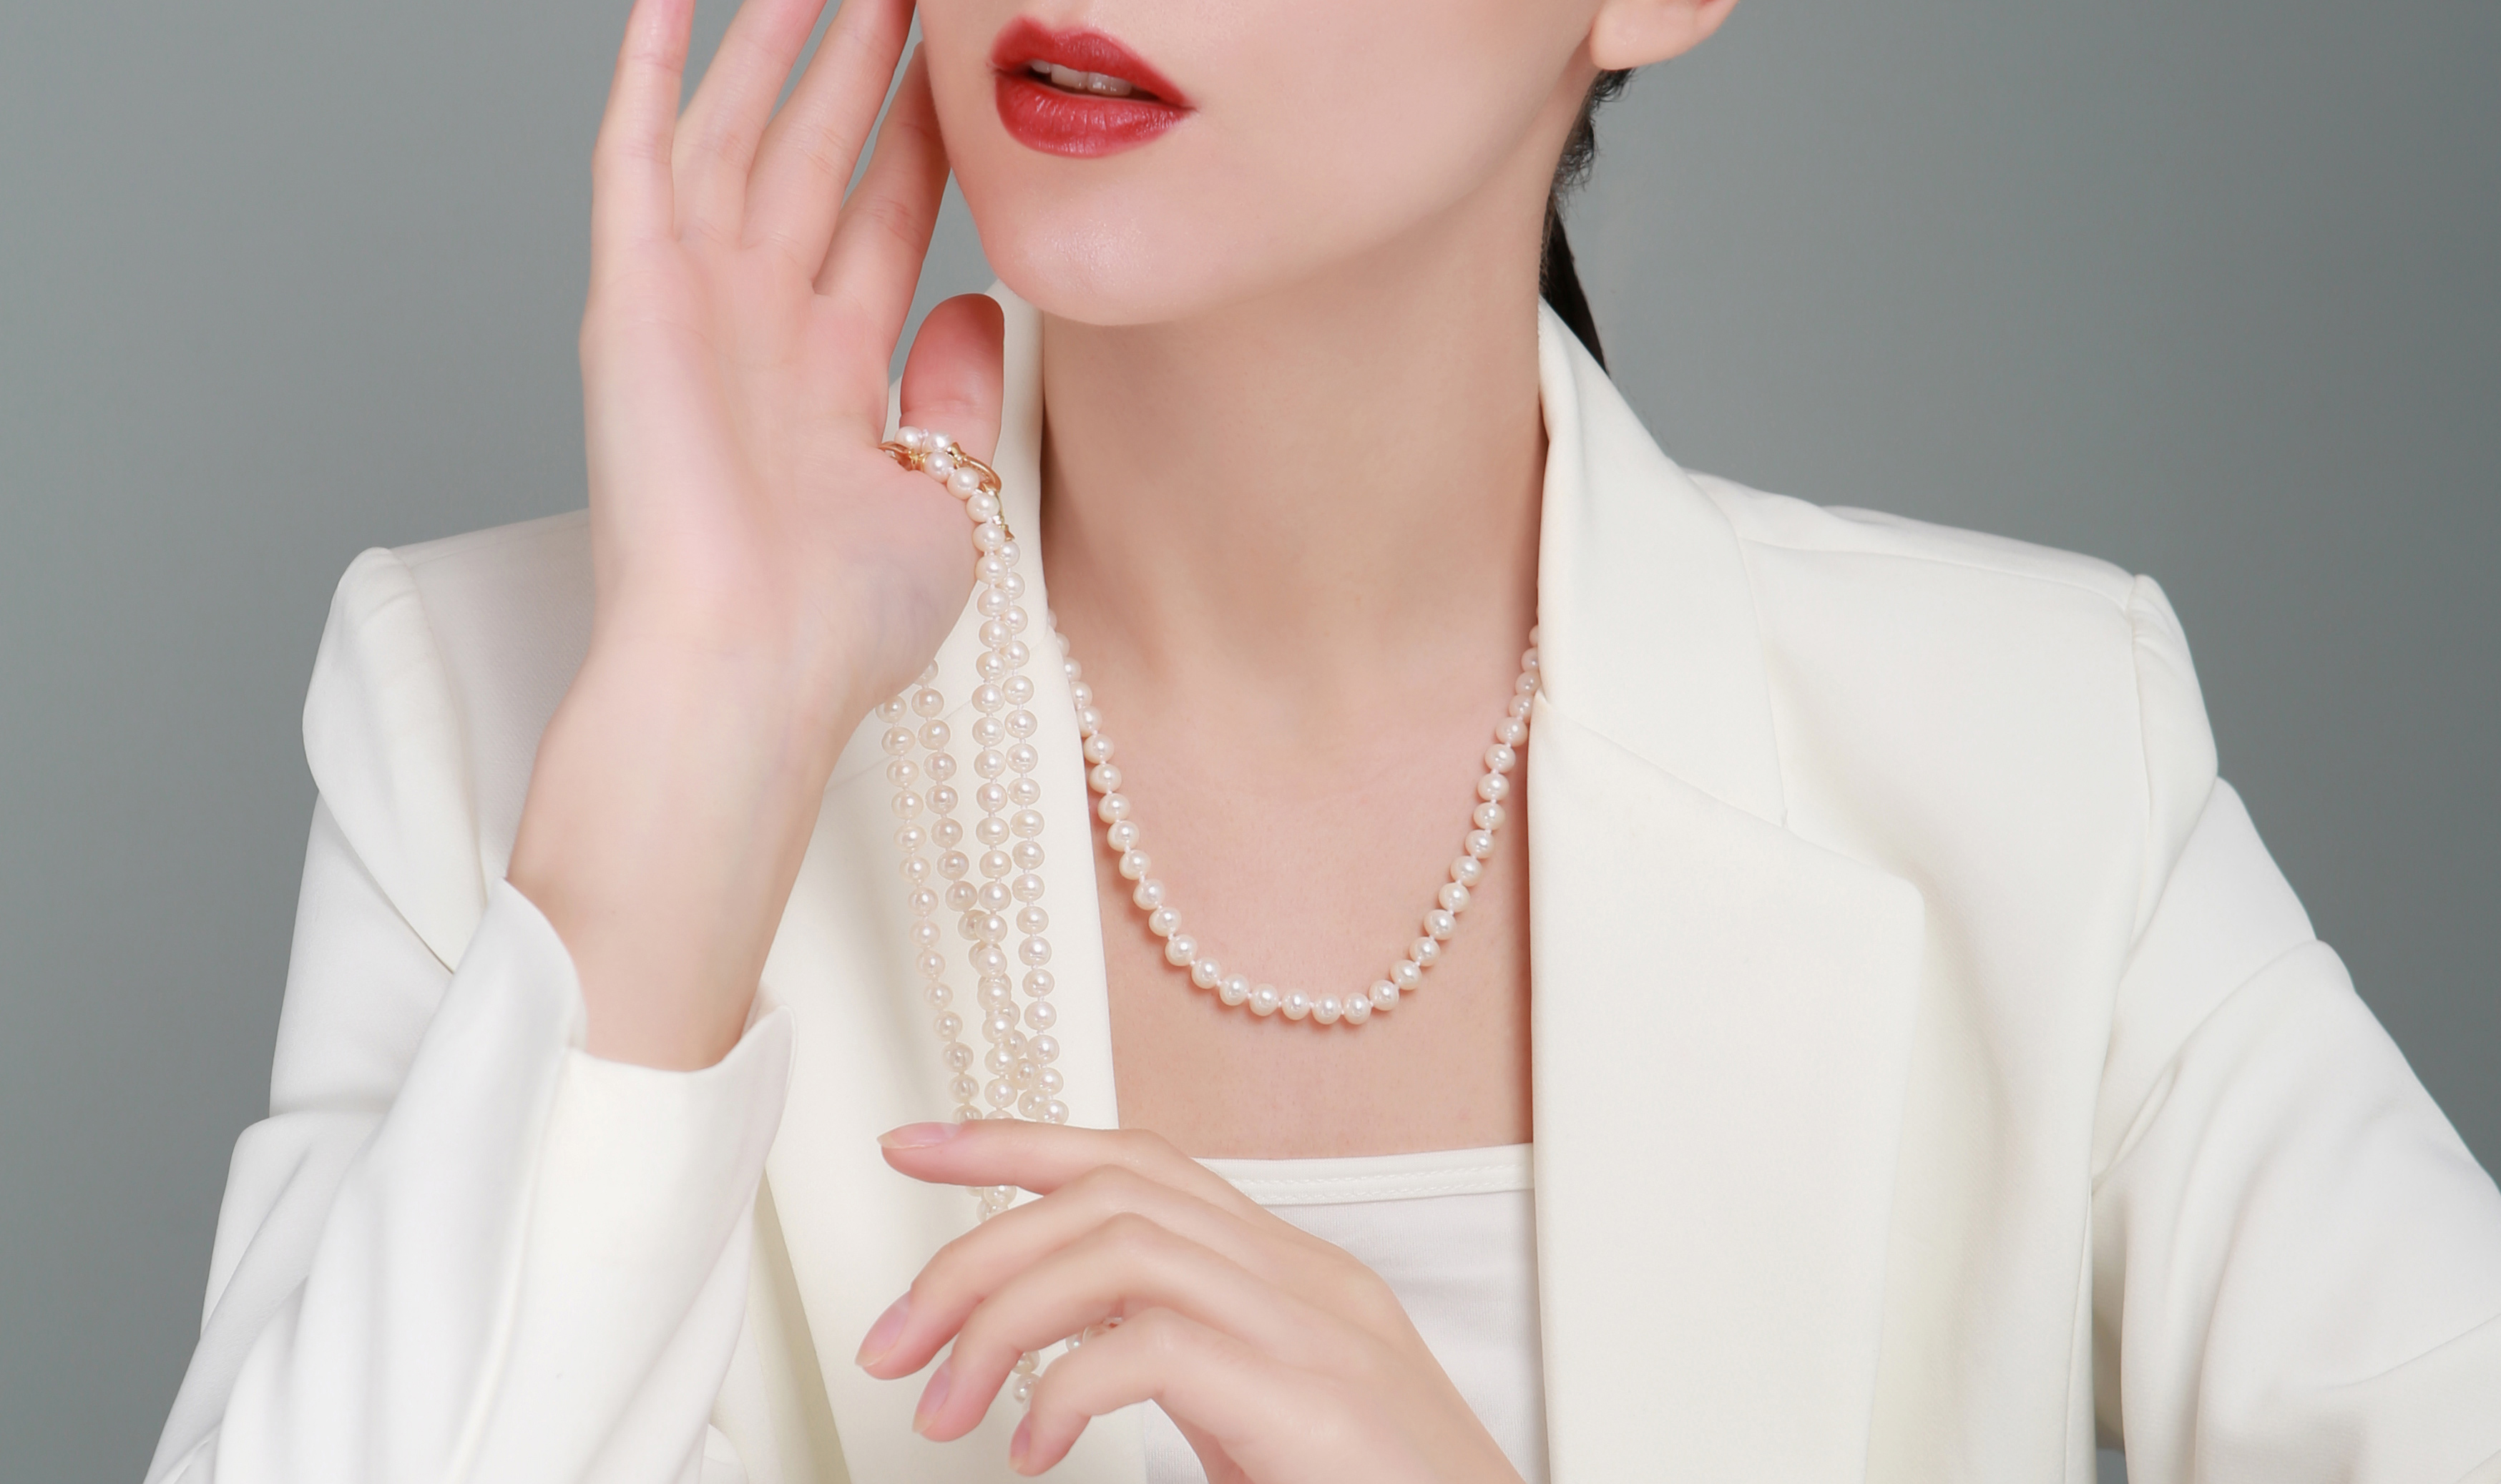 lola queen珍珠项链 款式优雅大方 圆润饱满 颜色白亮色泽好 配有全套